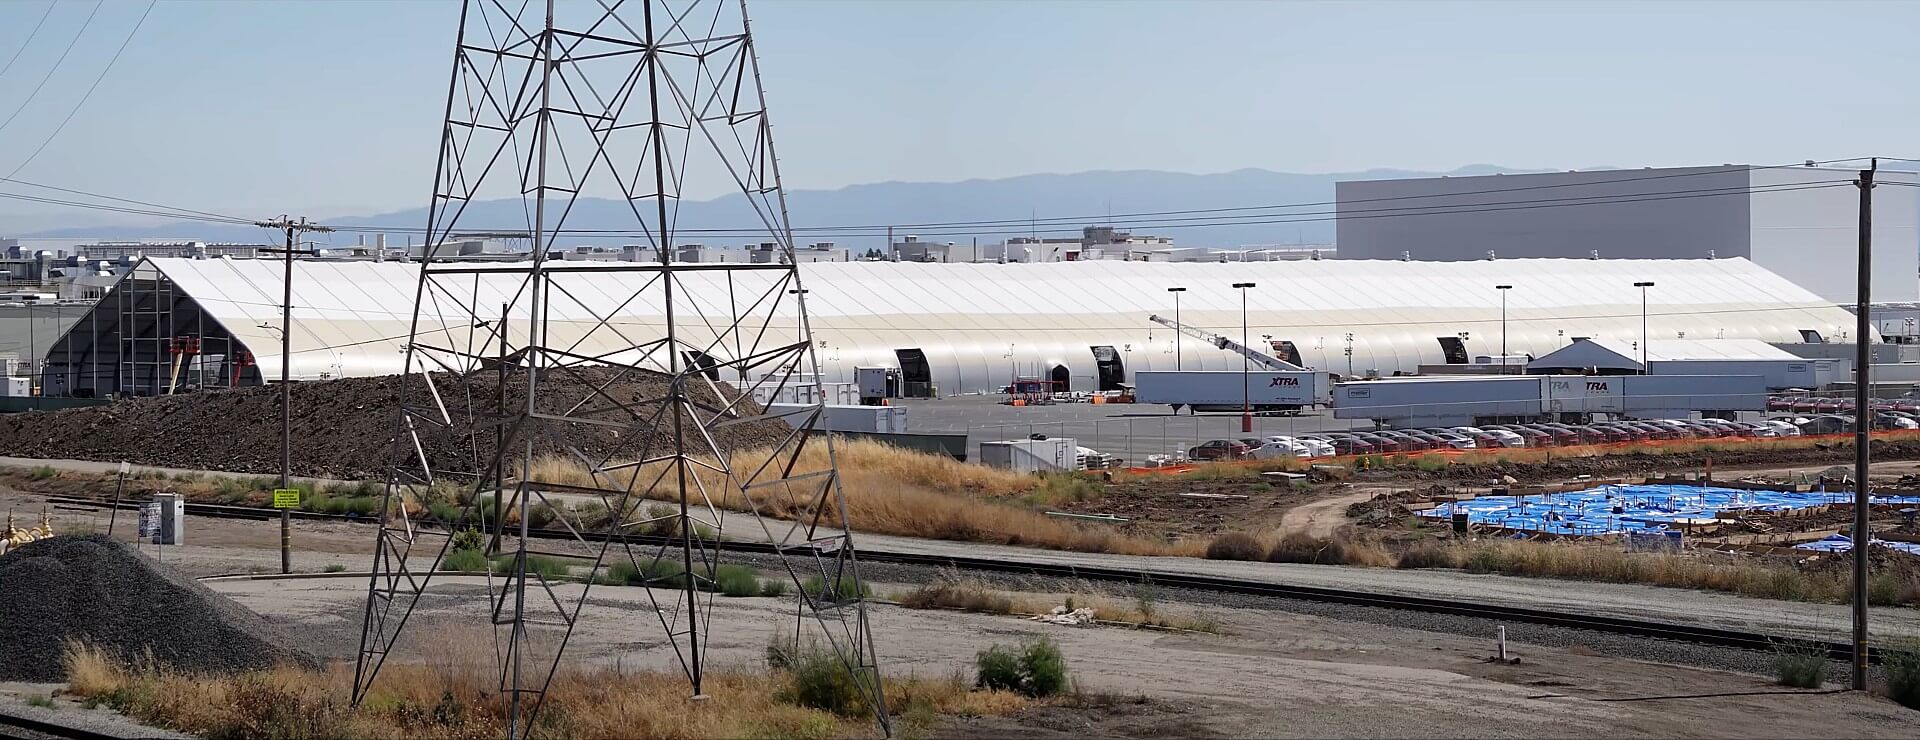 Tesla aggiunge un’altra misteriosa tenda alla fabbrica di Fremont